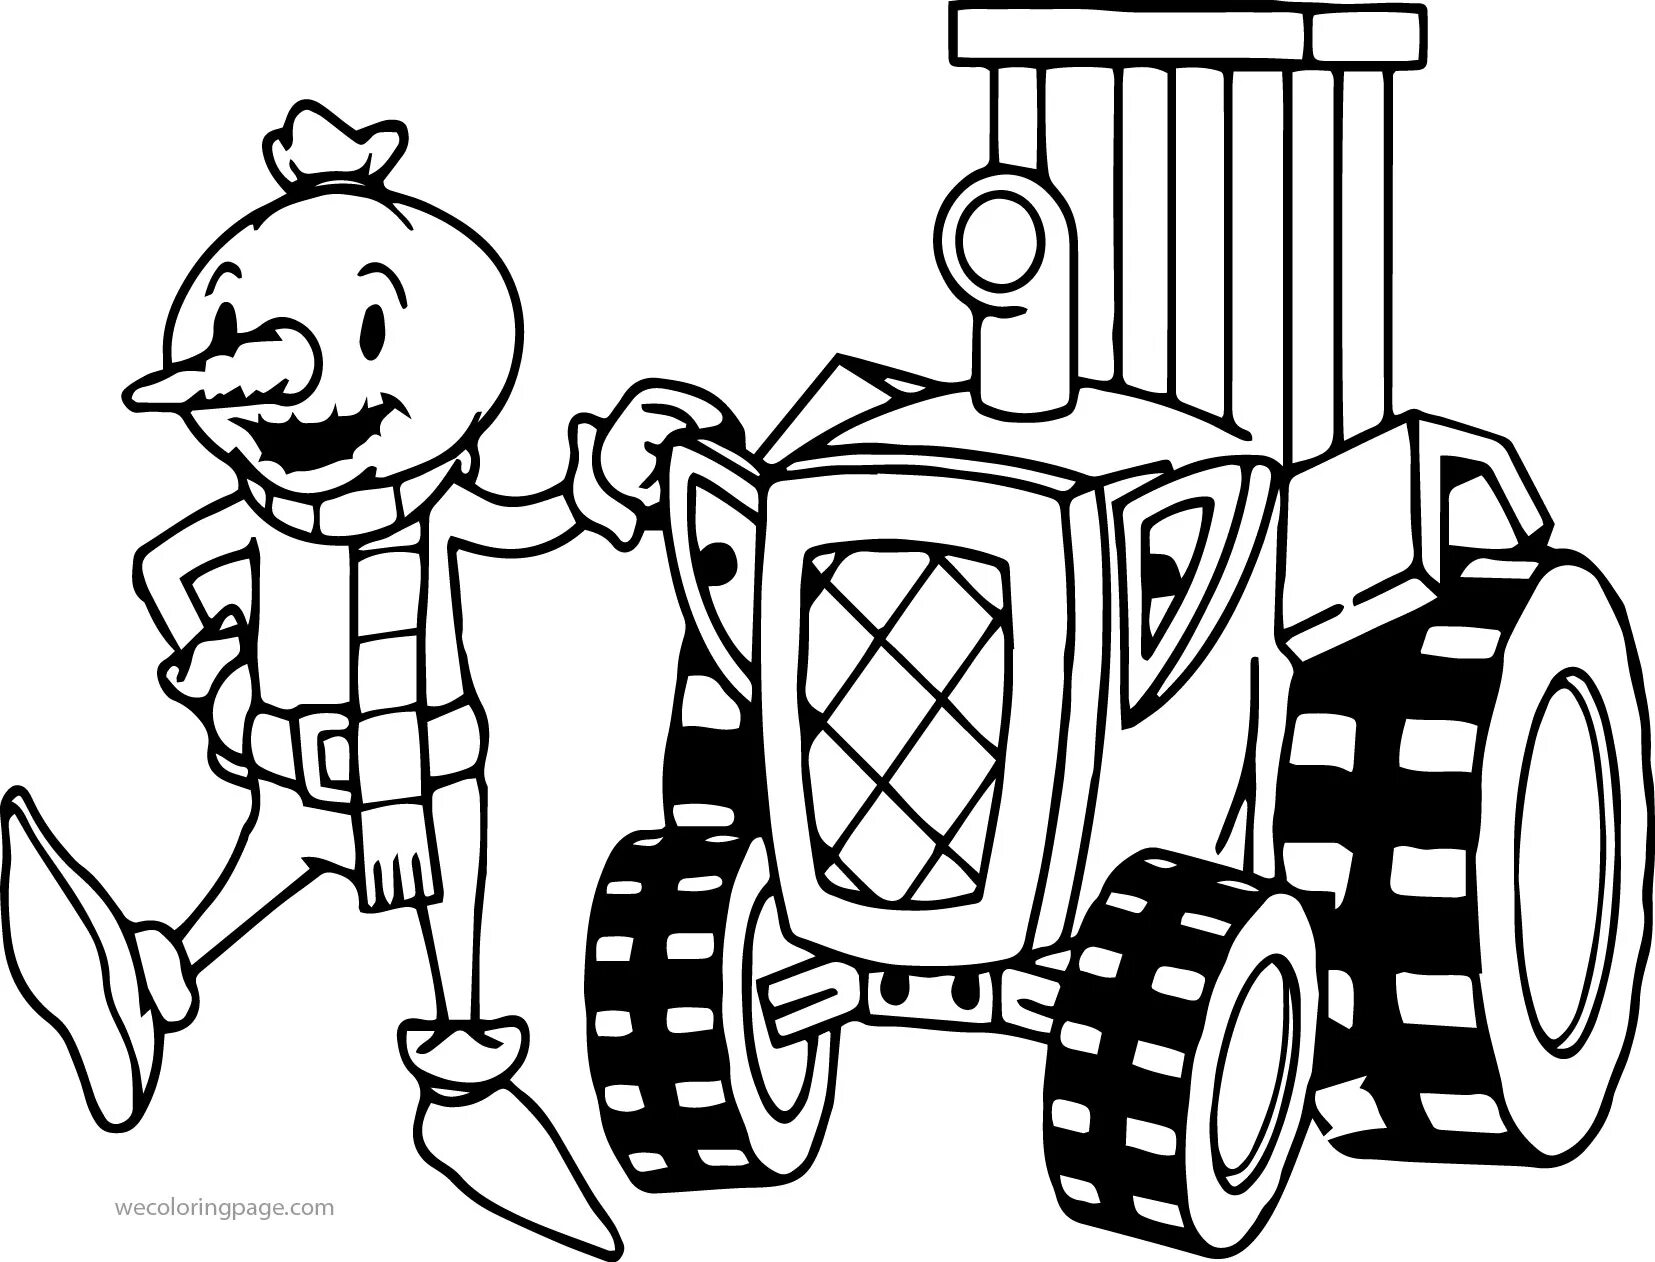 Tractors cartoon #1